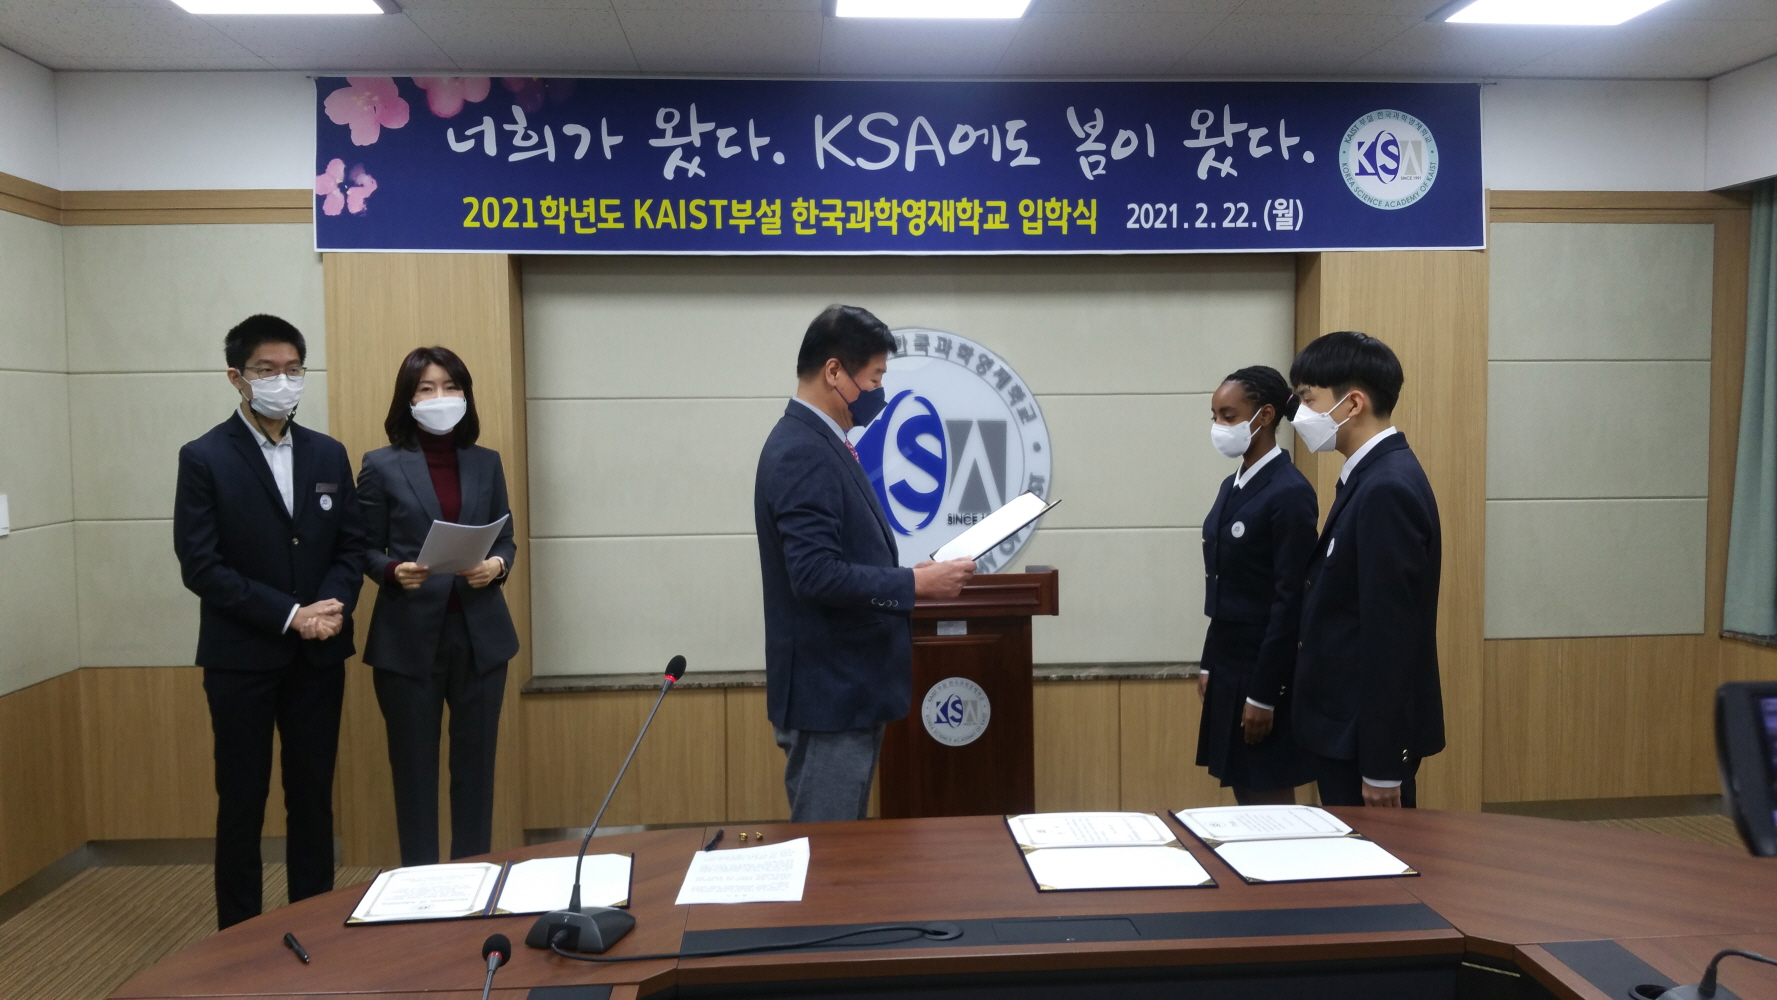 2021학년도 KAIST부설 한국과학영재학교 입학식